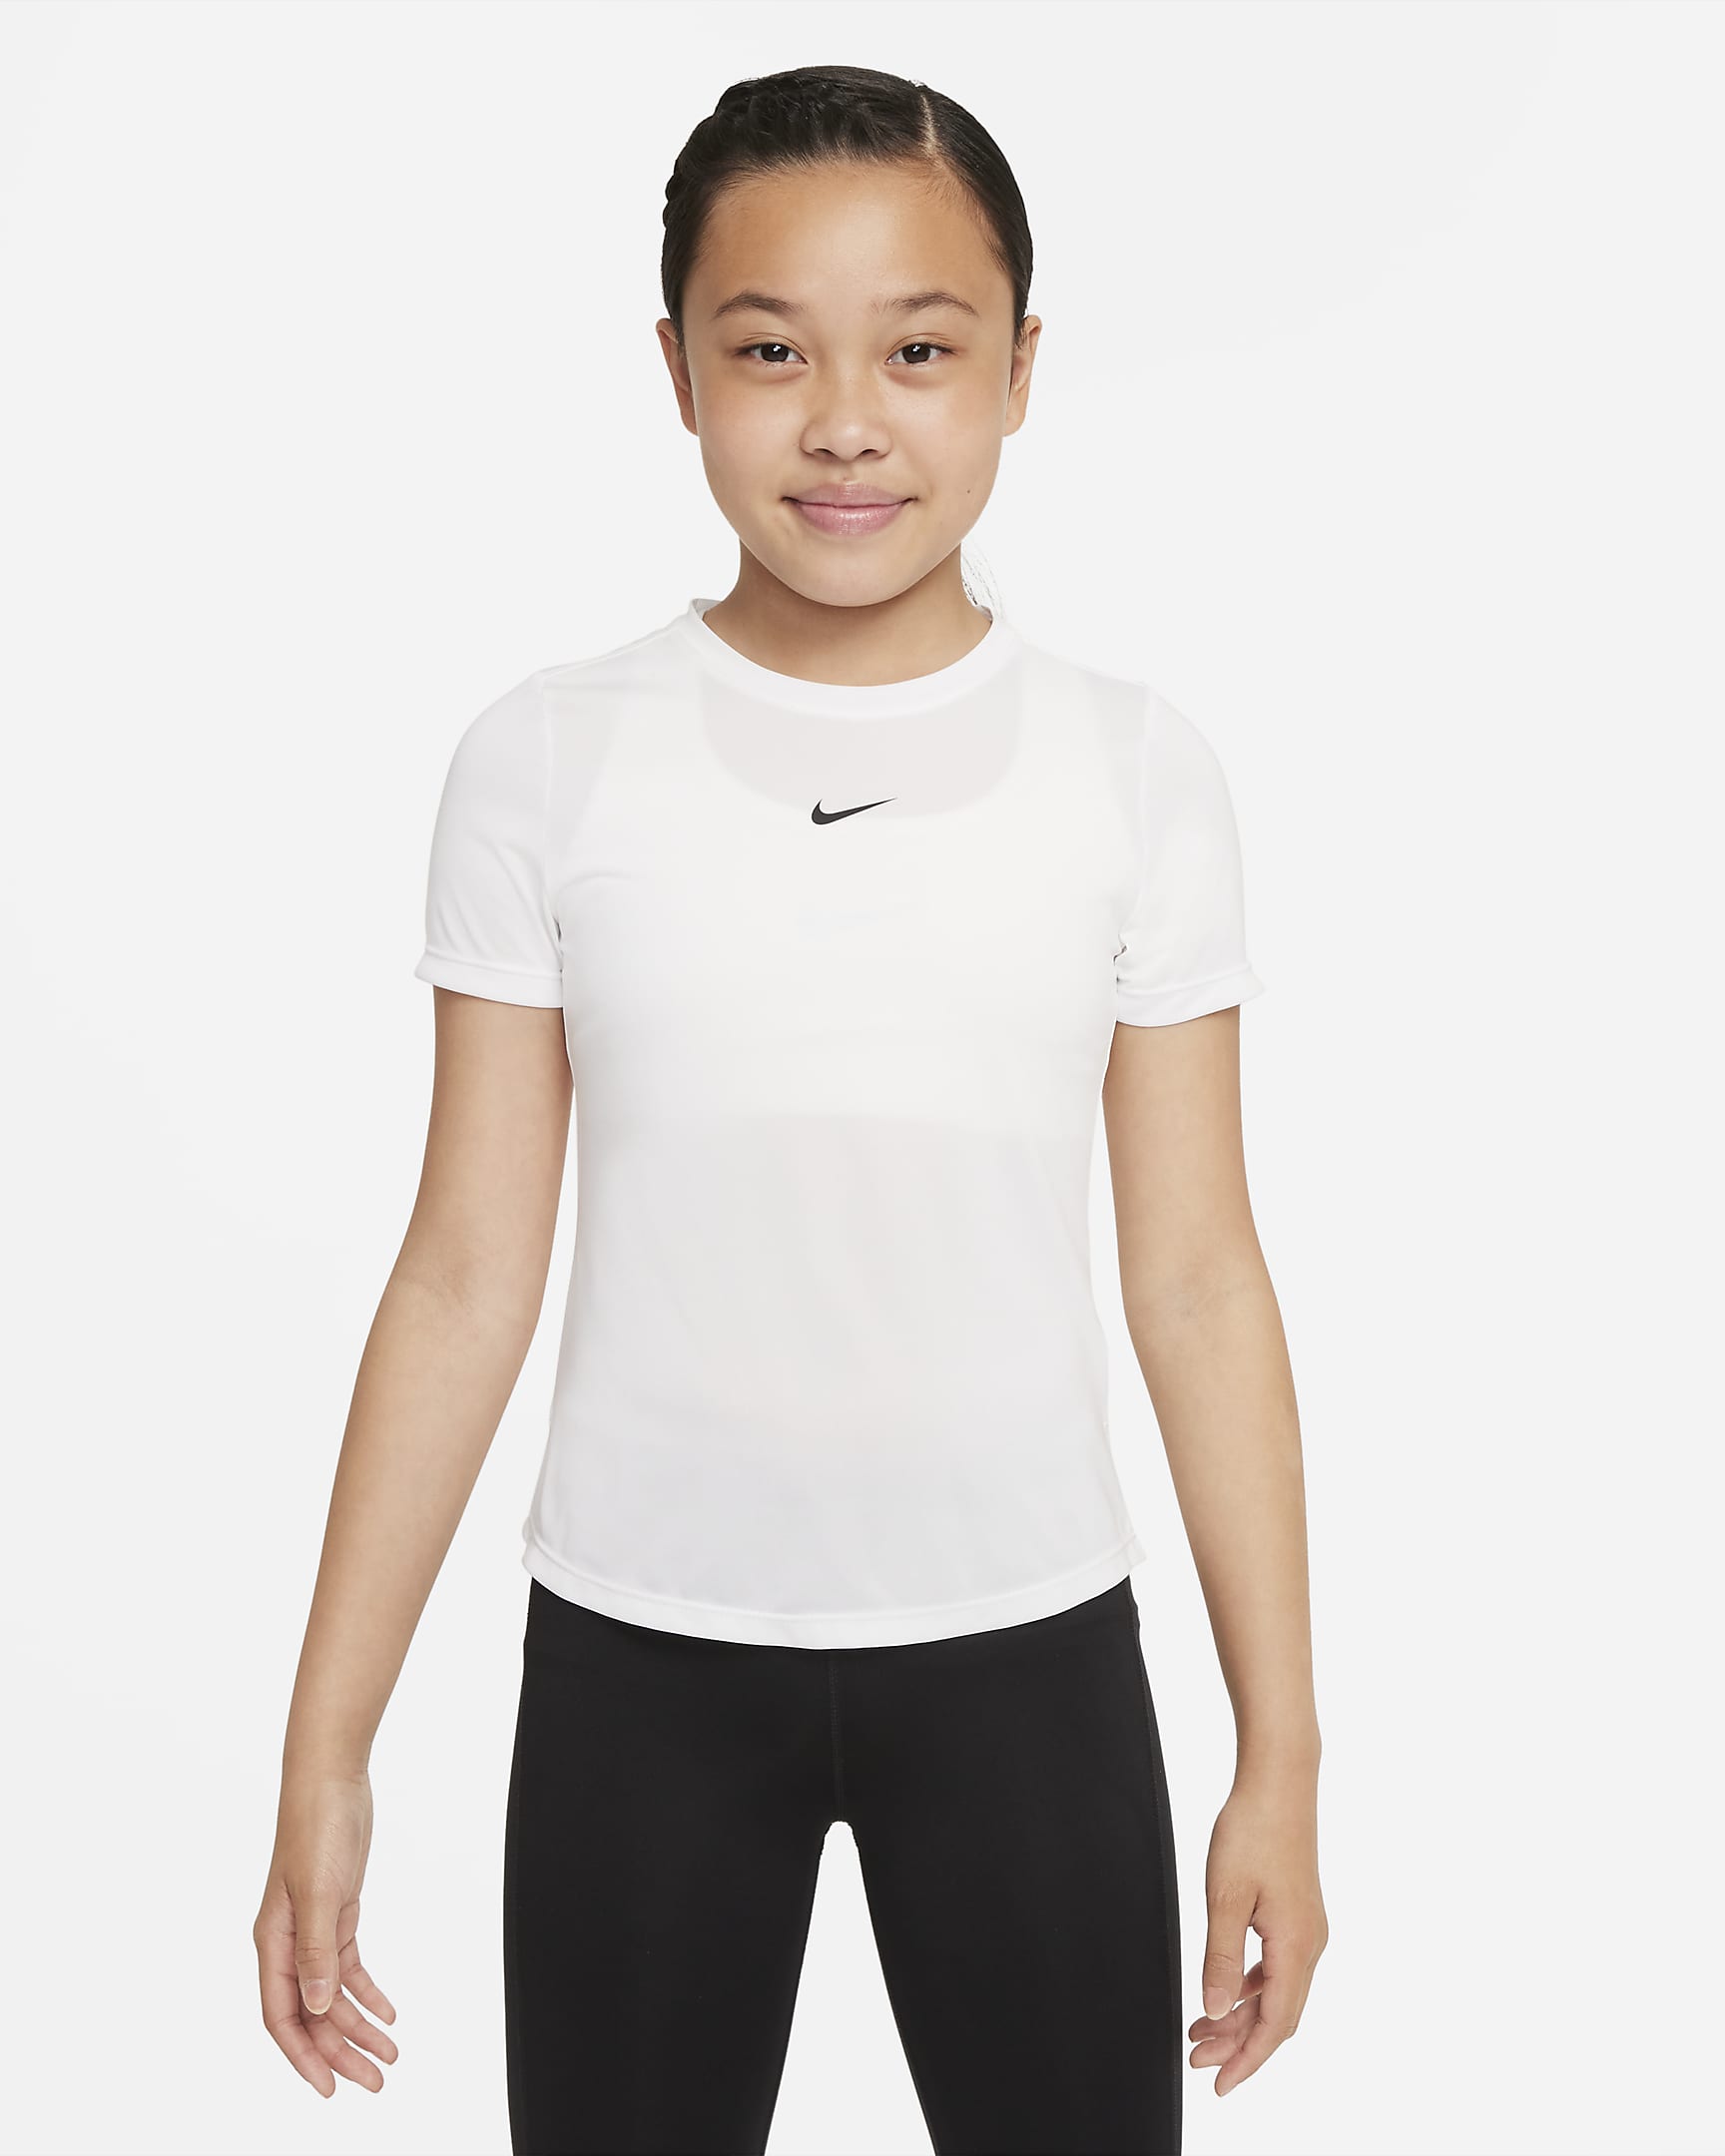 Nike One Big Kids' (Girls') Short-Sleeve Top. Nike.com